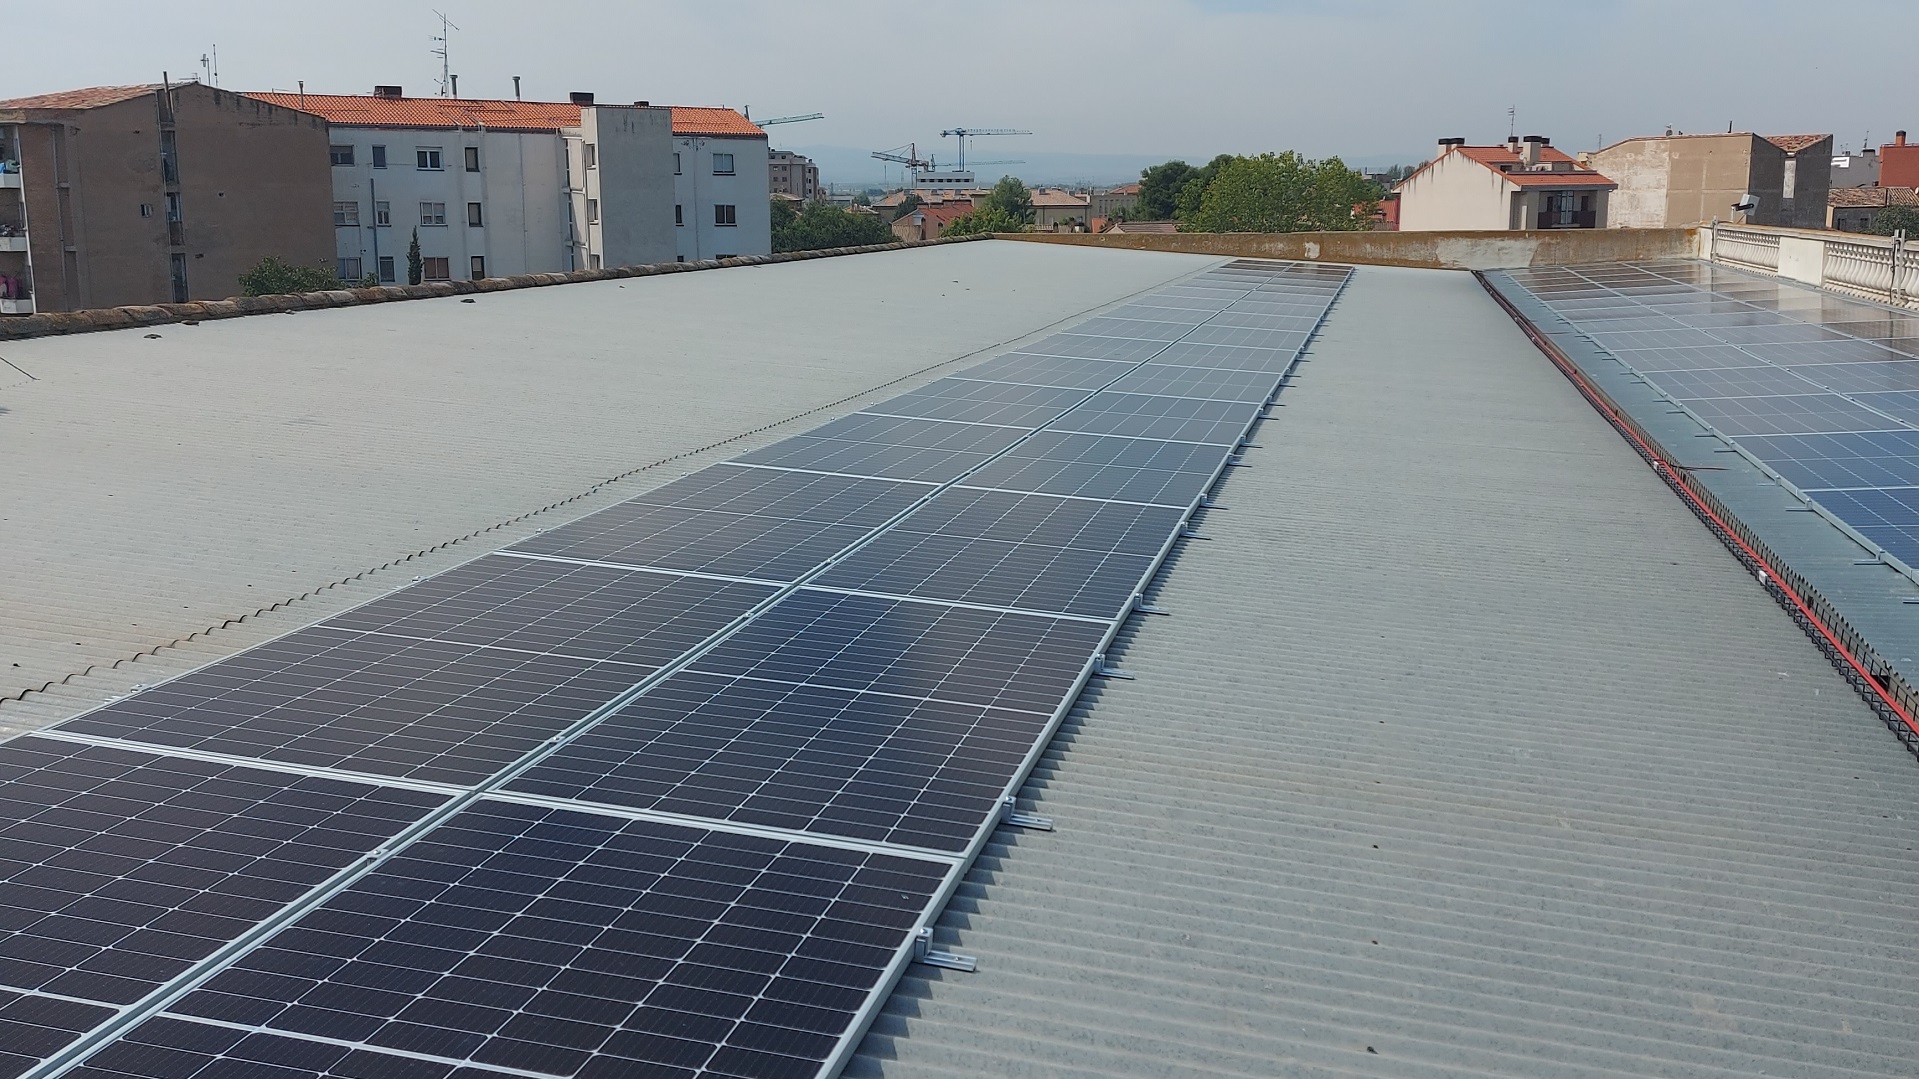 Instalación solar fotovoltaica de autoconsumo de 51 kWp para el Colegio San Francisco Javier de Tudela (Navarra)